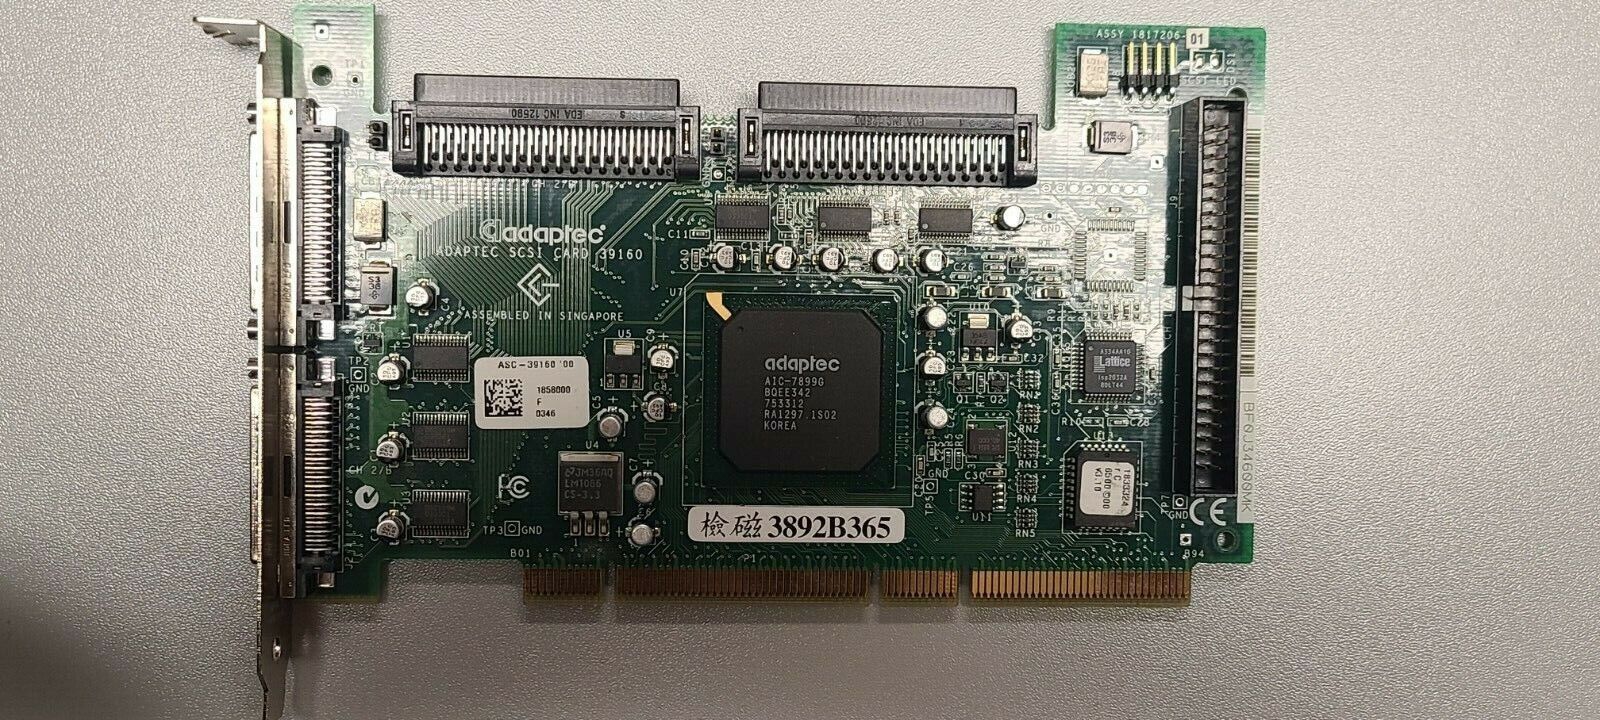 Genuine Dell Adaptec ASC-39160 U160 SCSI